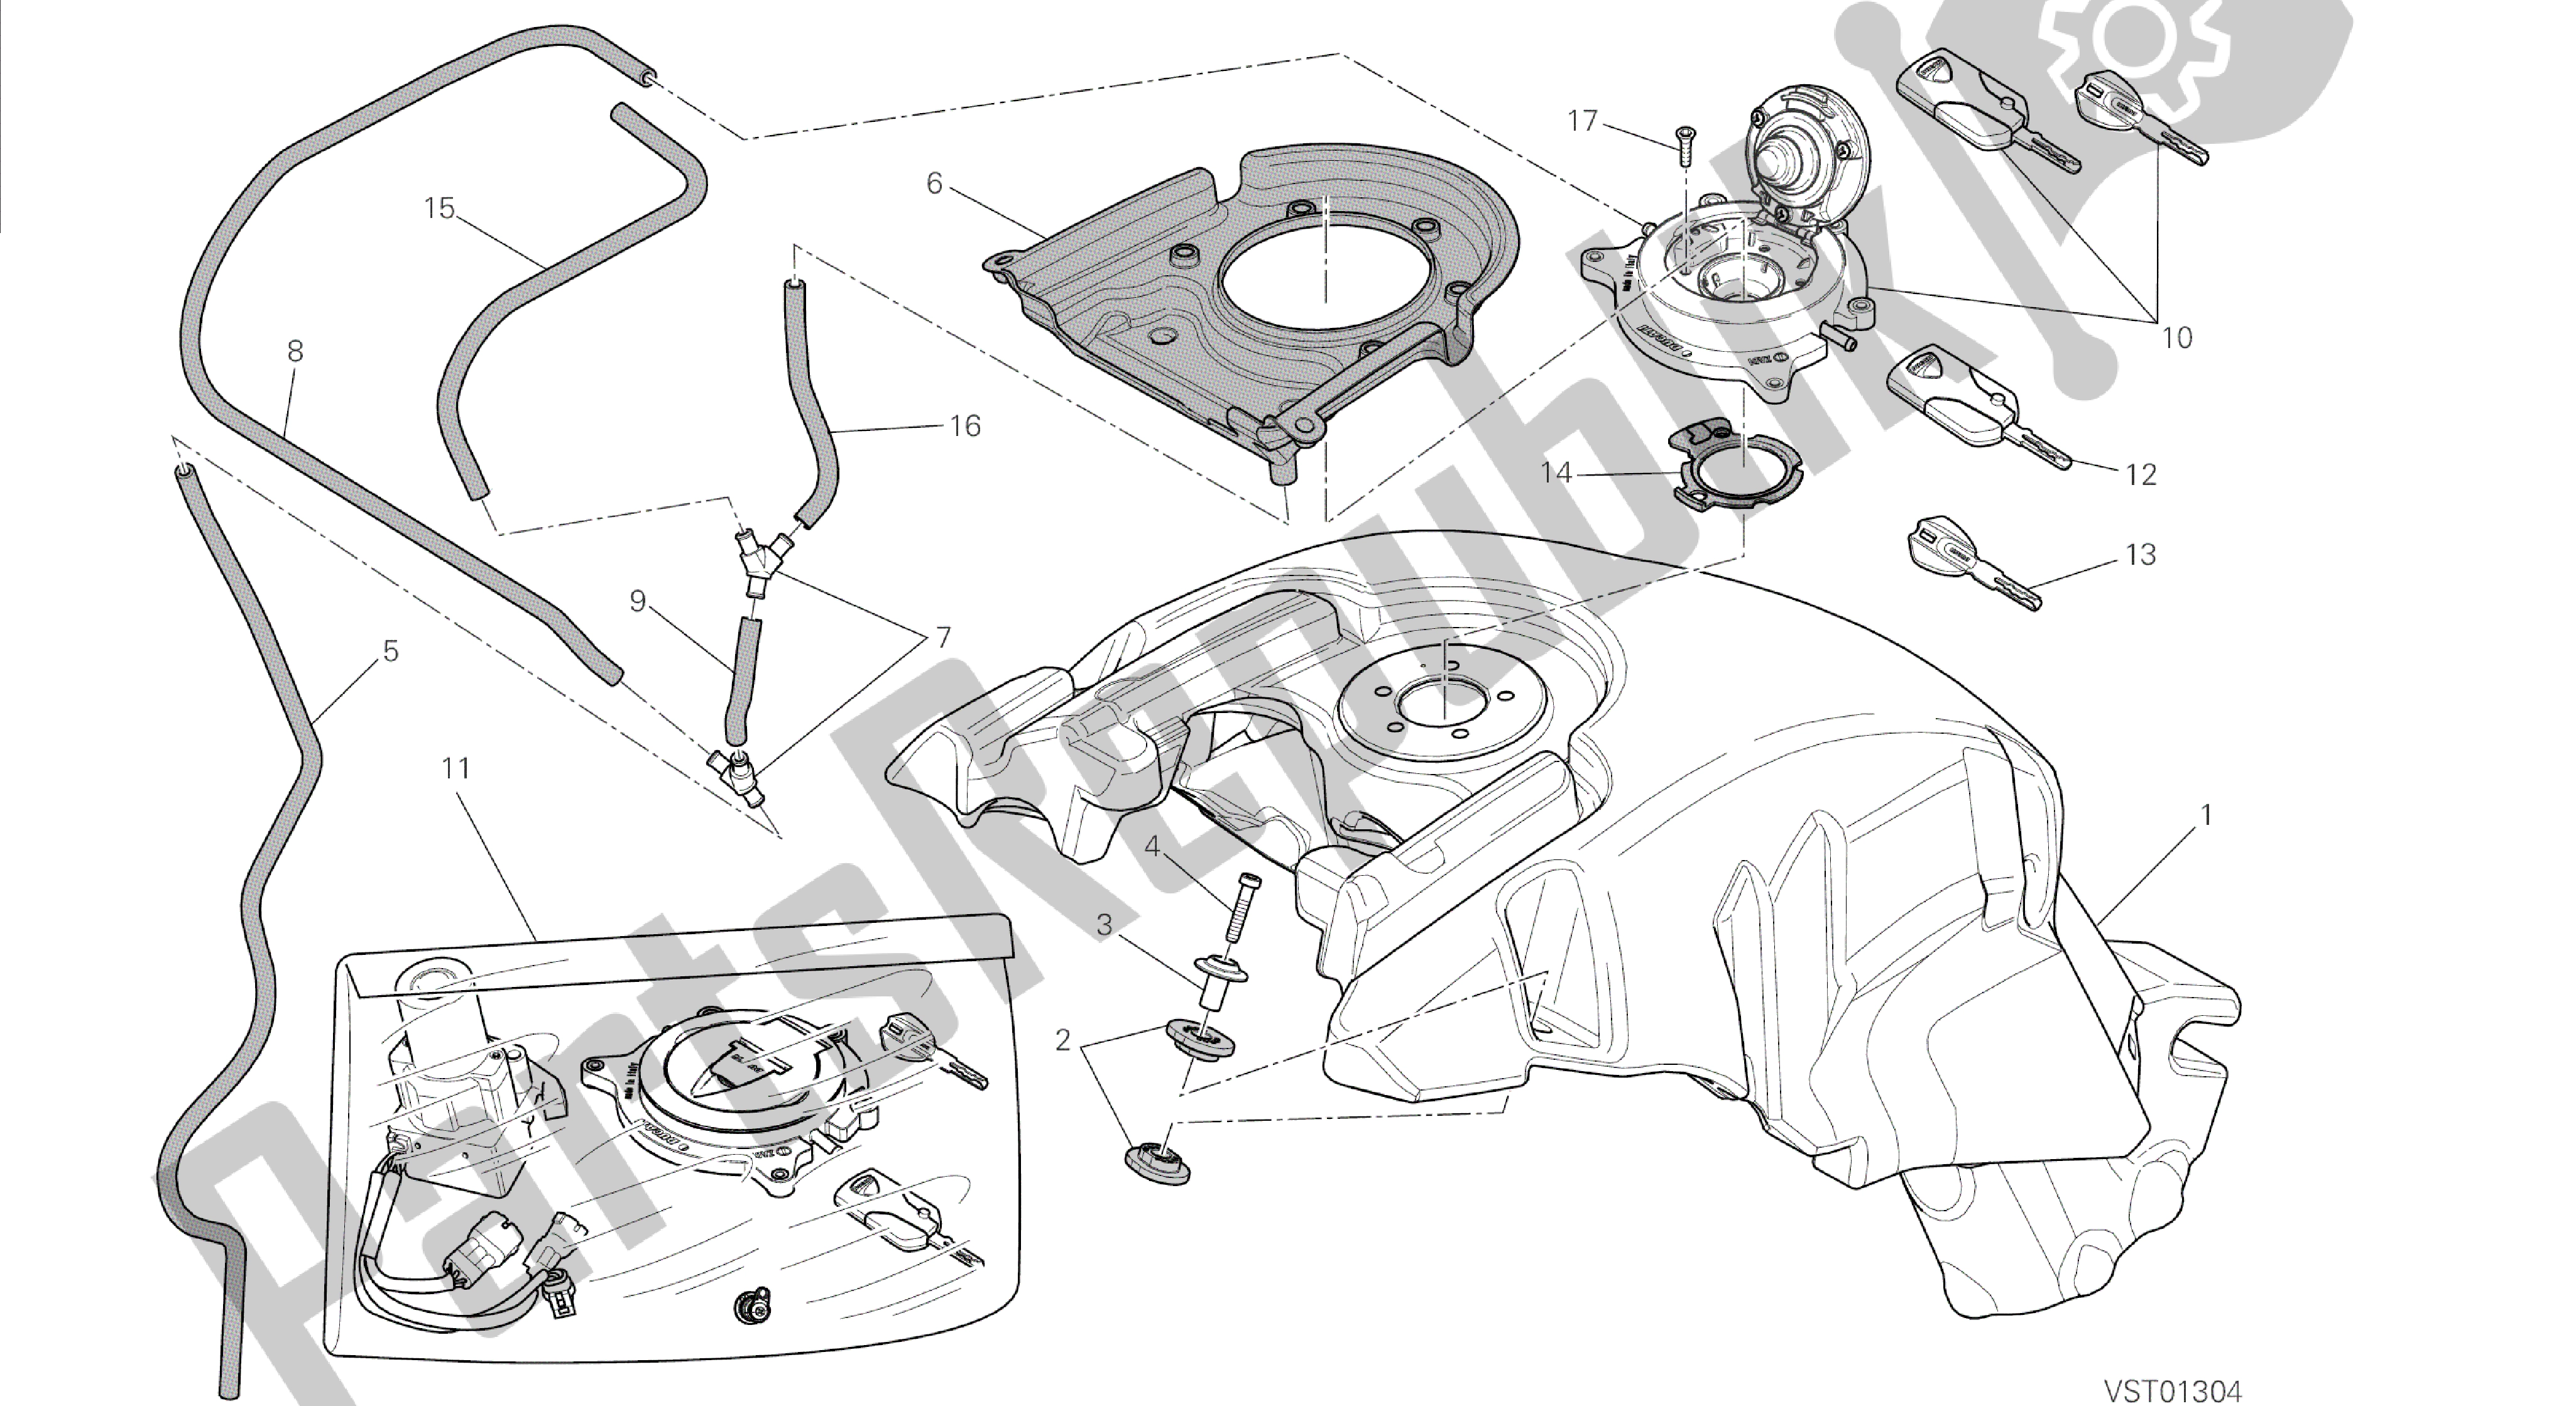 Todas las partes para Dibujo 032 - Tanque De Combustible [mod: Dvl; Xst: Marco De Grupo Aus, Eur, Fra, Jap] de Ducati Diavel 1200 2014